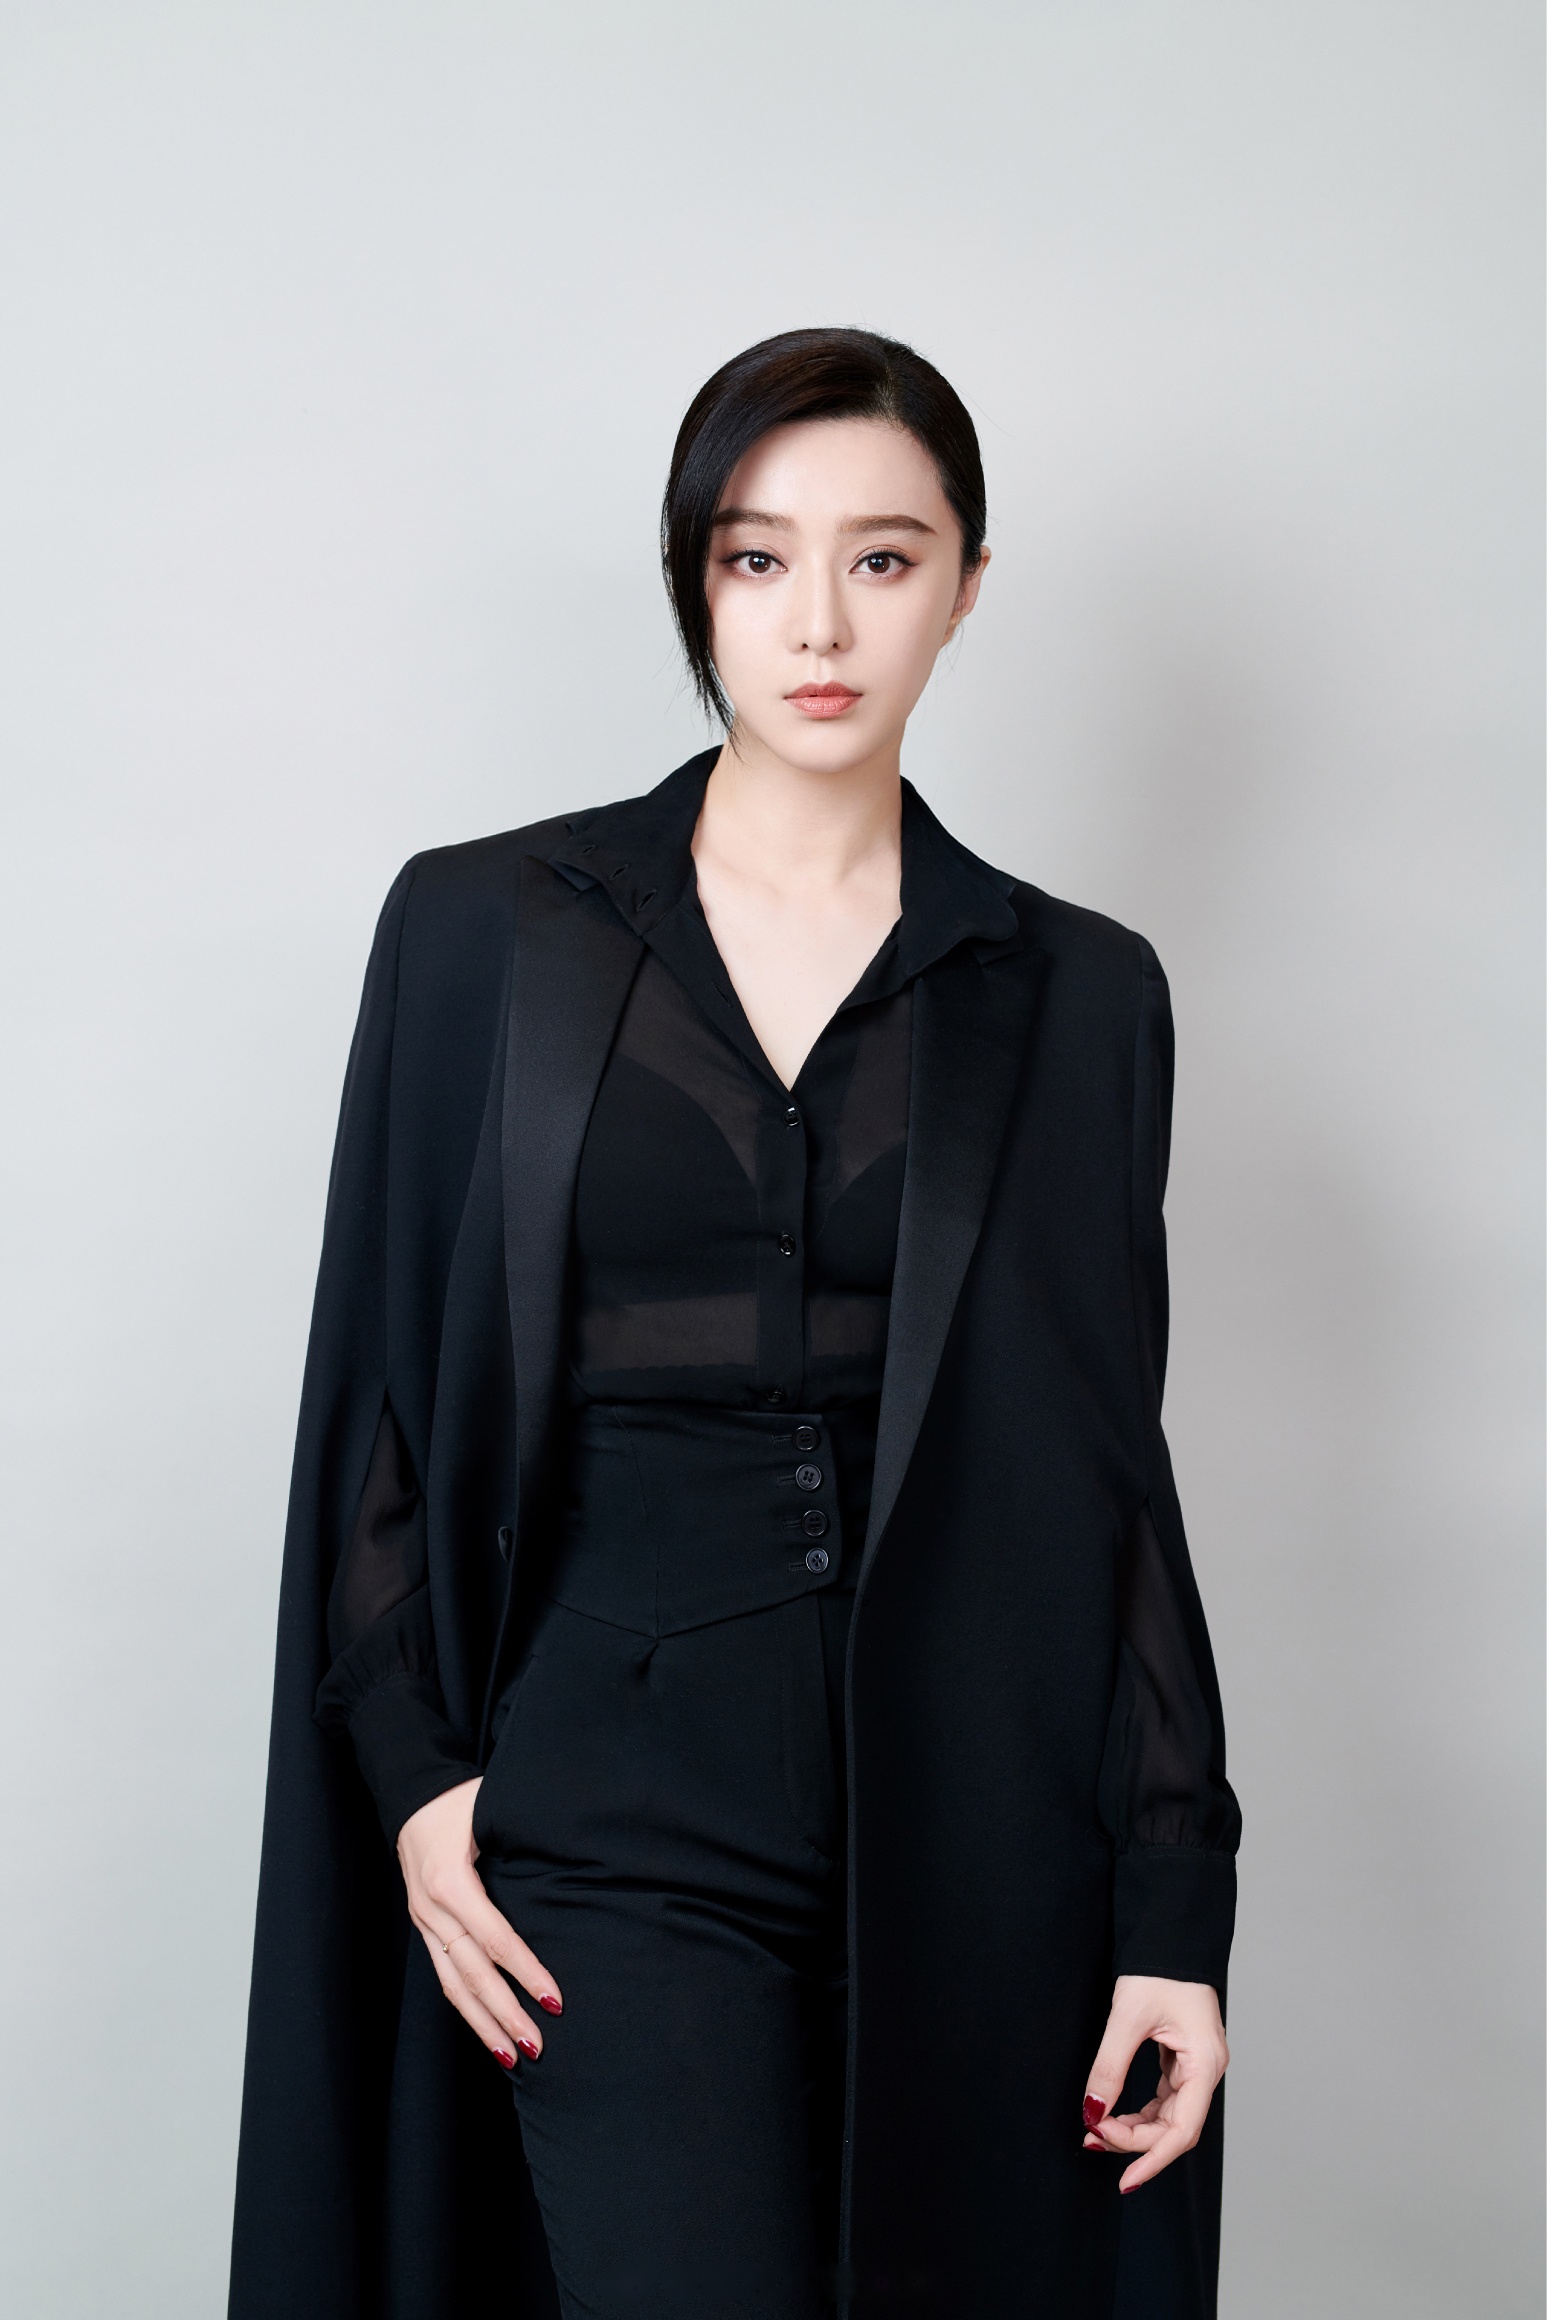 近日,美国权威时尚媒体红毯网,报道了中国女演员范冰冰,出席2019